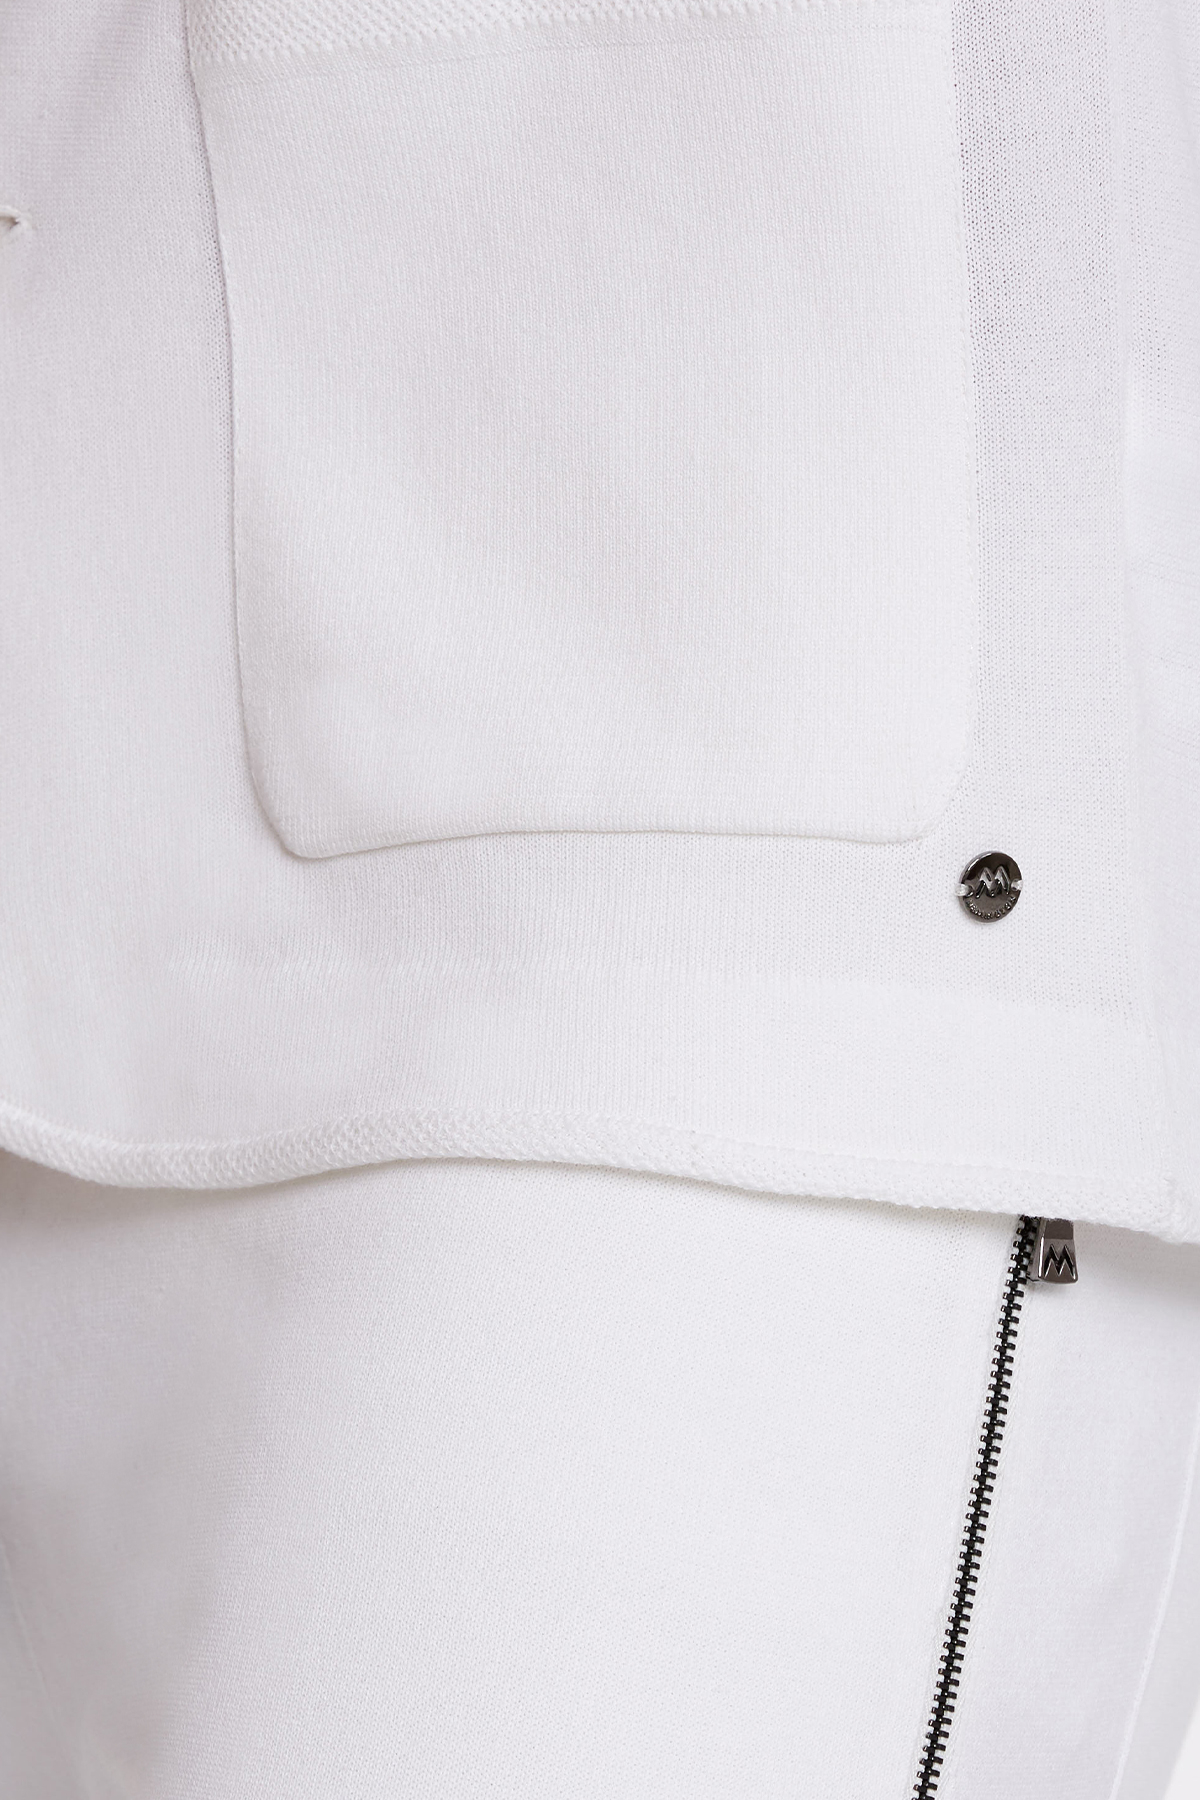 Kırık Beyaz Saf Pamuk Triko Ceket